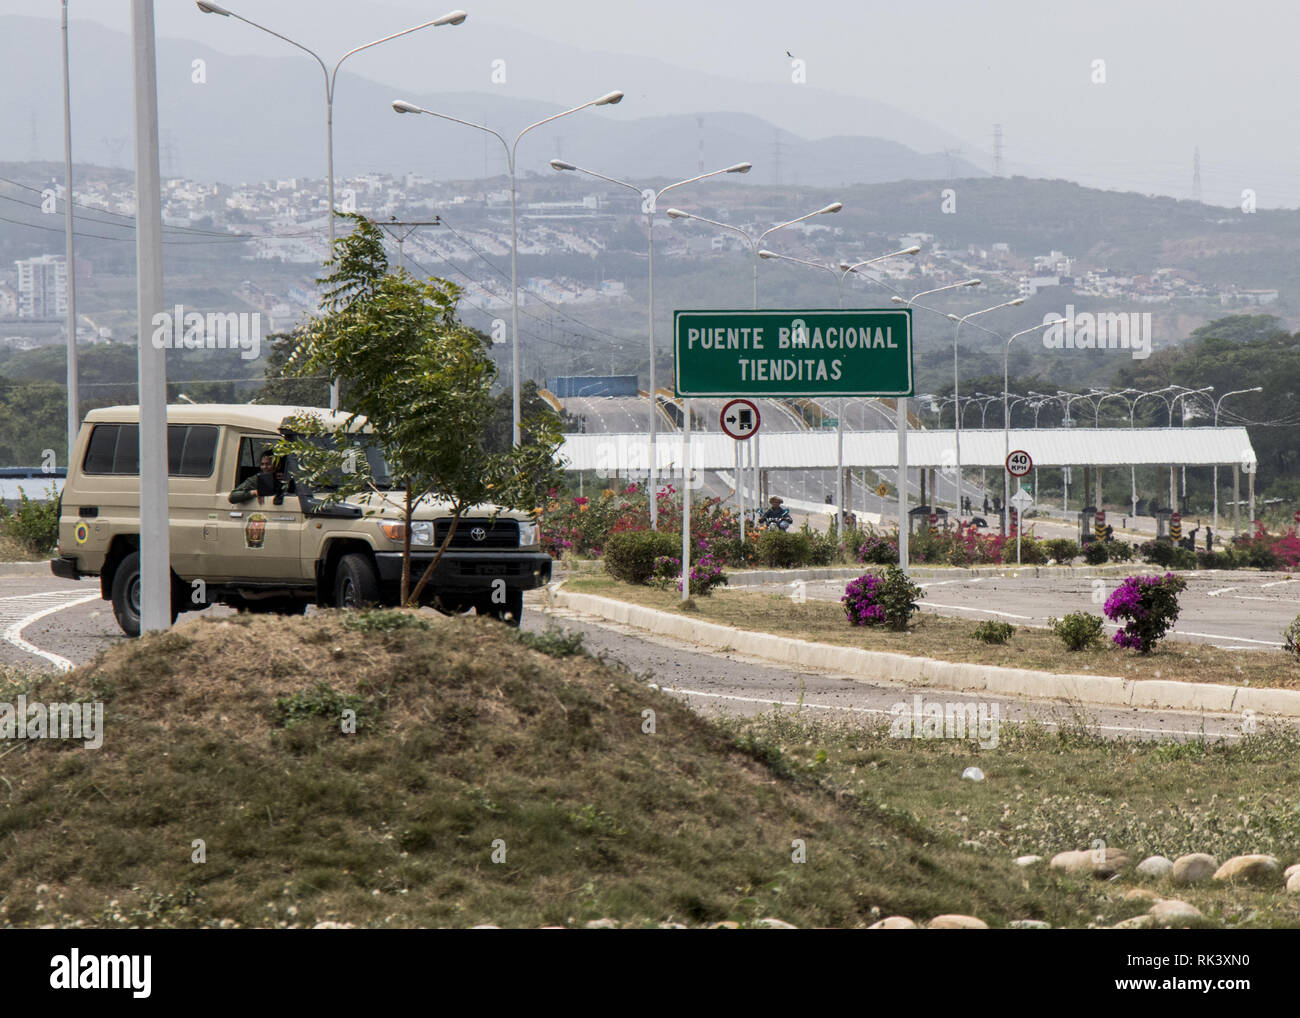 Caracas, Venezuela. Feb 8, 2019. Passage de la frontière entre la Colombie et le Venezuela près du pont. Tienditas Au milieu de la dispute sur l'aide humanitaire pour le Venezuela, les autorités de la pays de l'Amérique du Sud ont bloqué le pont de l'autoroute à la Colombie voisine. Le pont a été achevé en 2016, mais jamais mis en service. Maintenant, il a été stoppé à la remorque d'un camion-citerne et deux récipients. 08 février 2019, le Venezuela, Cúcuta : Crédit : Elyxandro Cegarra/ZUMA/Alamy Fil Live News Banque D'Images